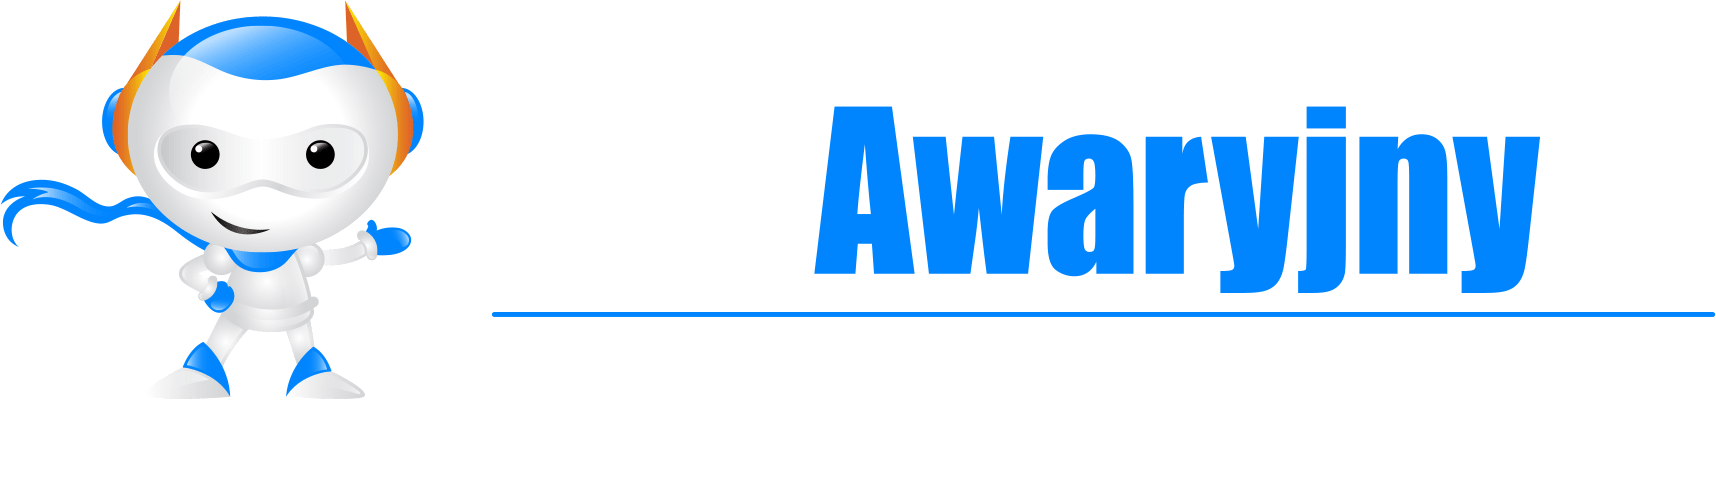 trybawaryjny.pl logo